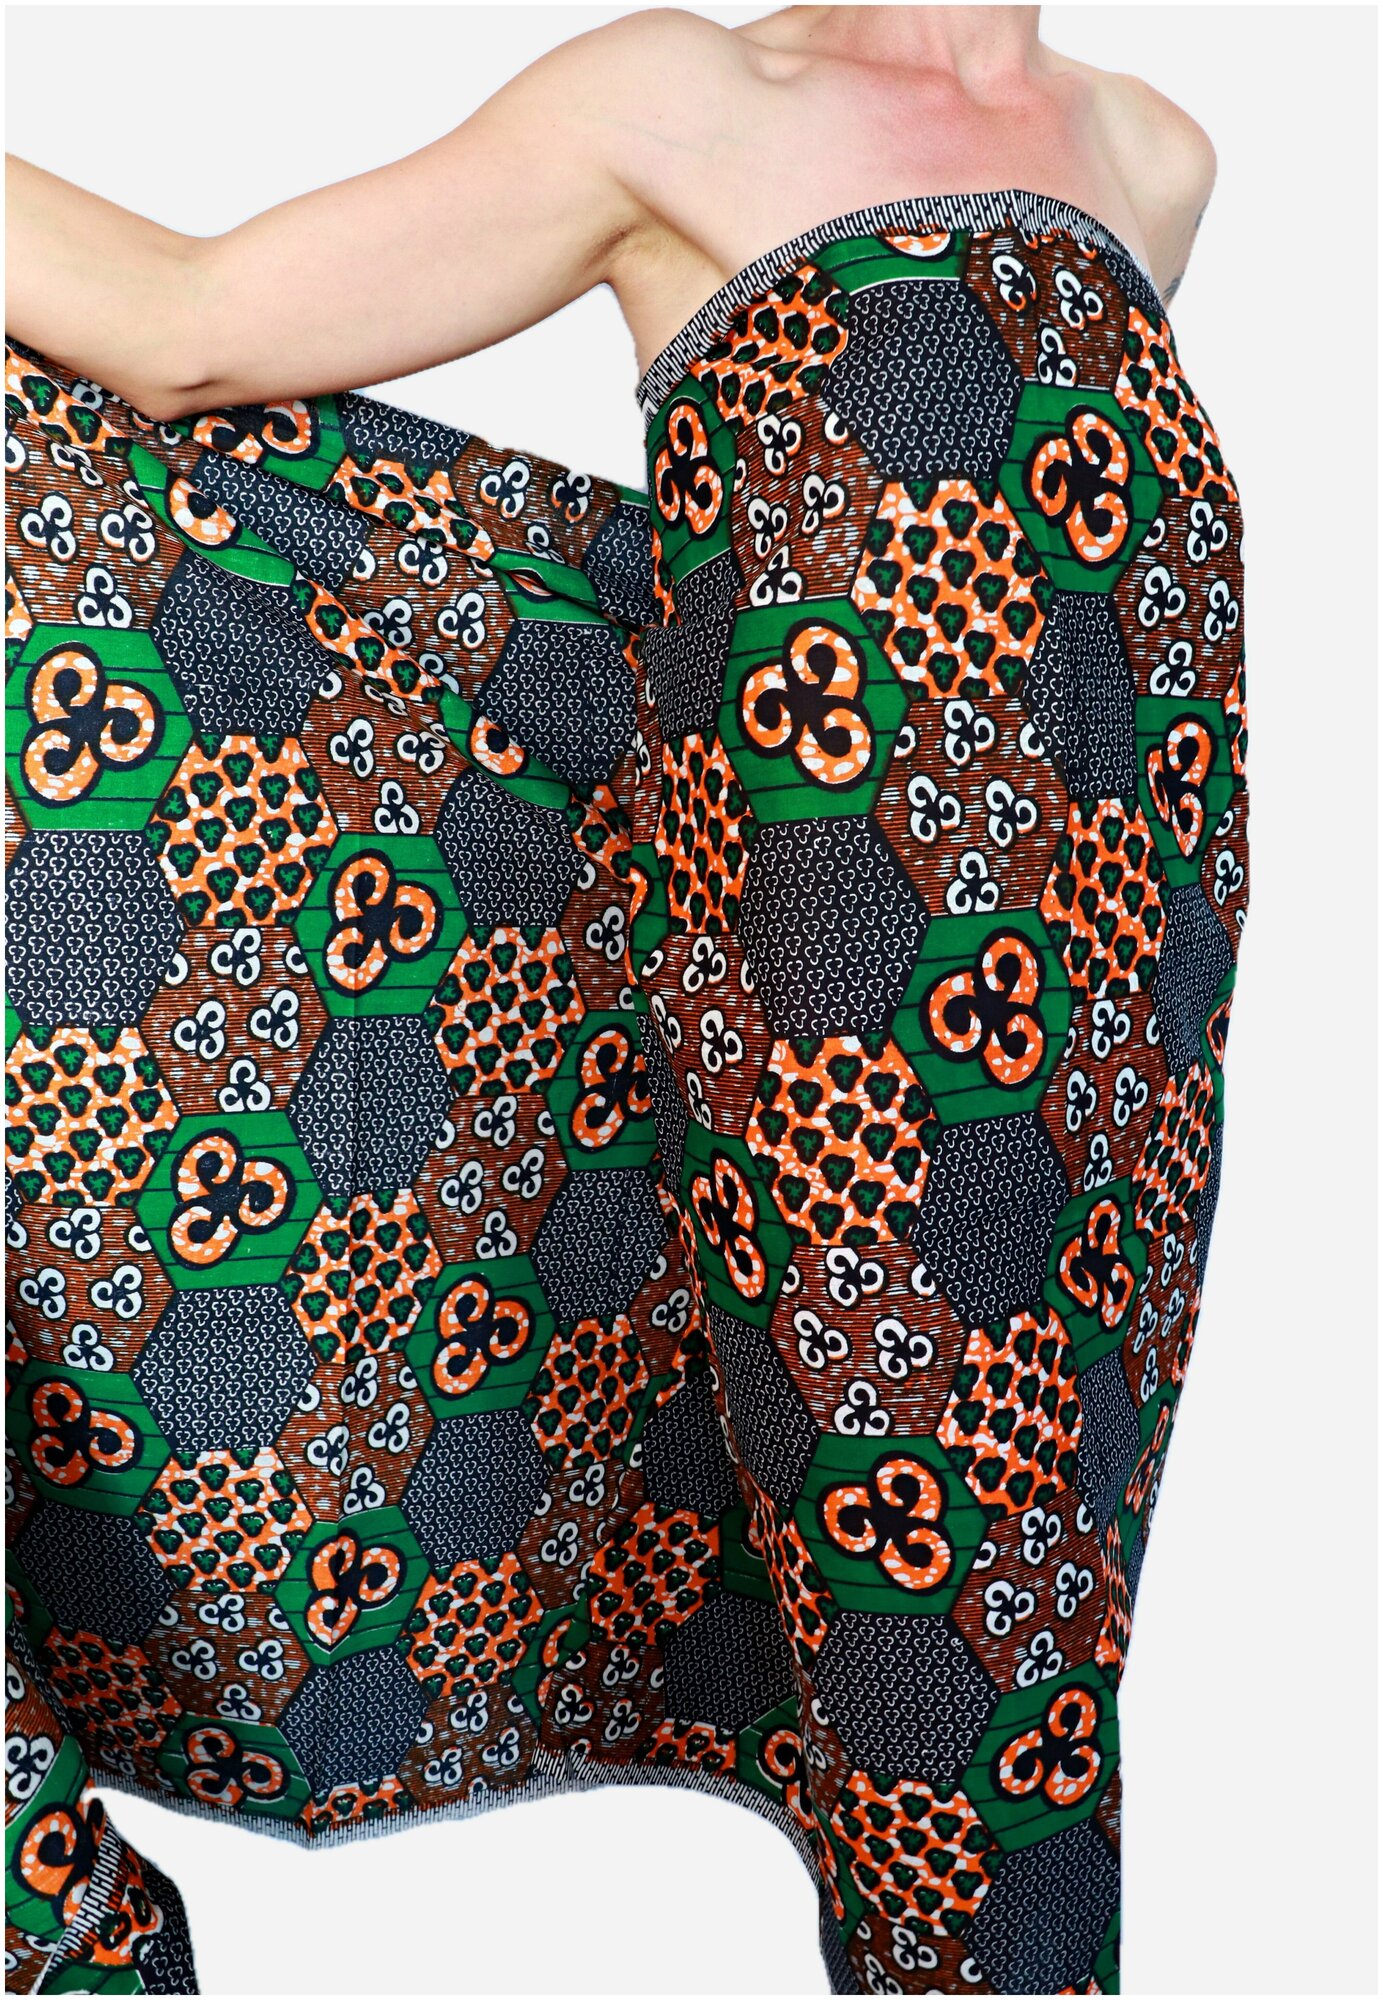 Ткань для шитья и рукоделия/ 100% африканский хлопок/ этнический принт из Танзании/ ткань для одежды, платьев, костюмов, декора/ 117х100 см.